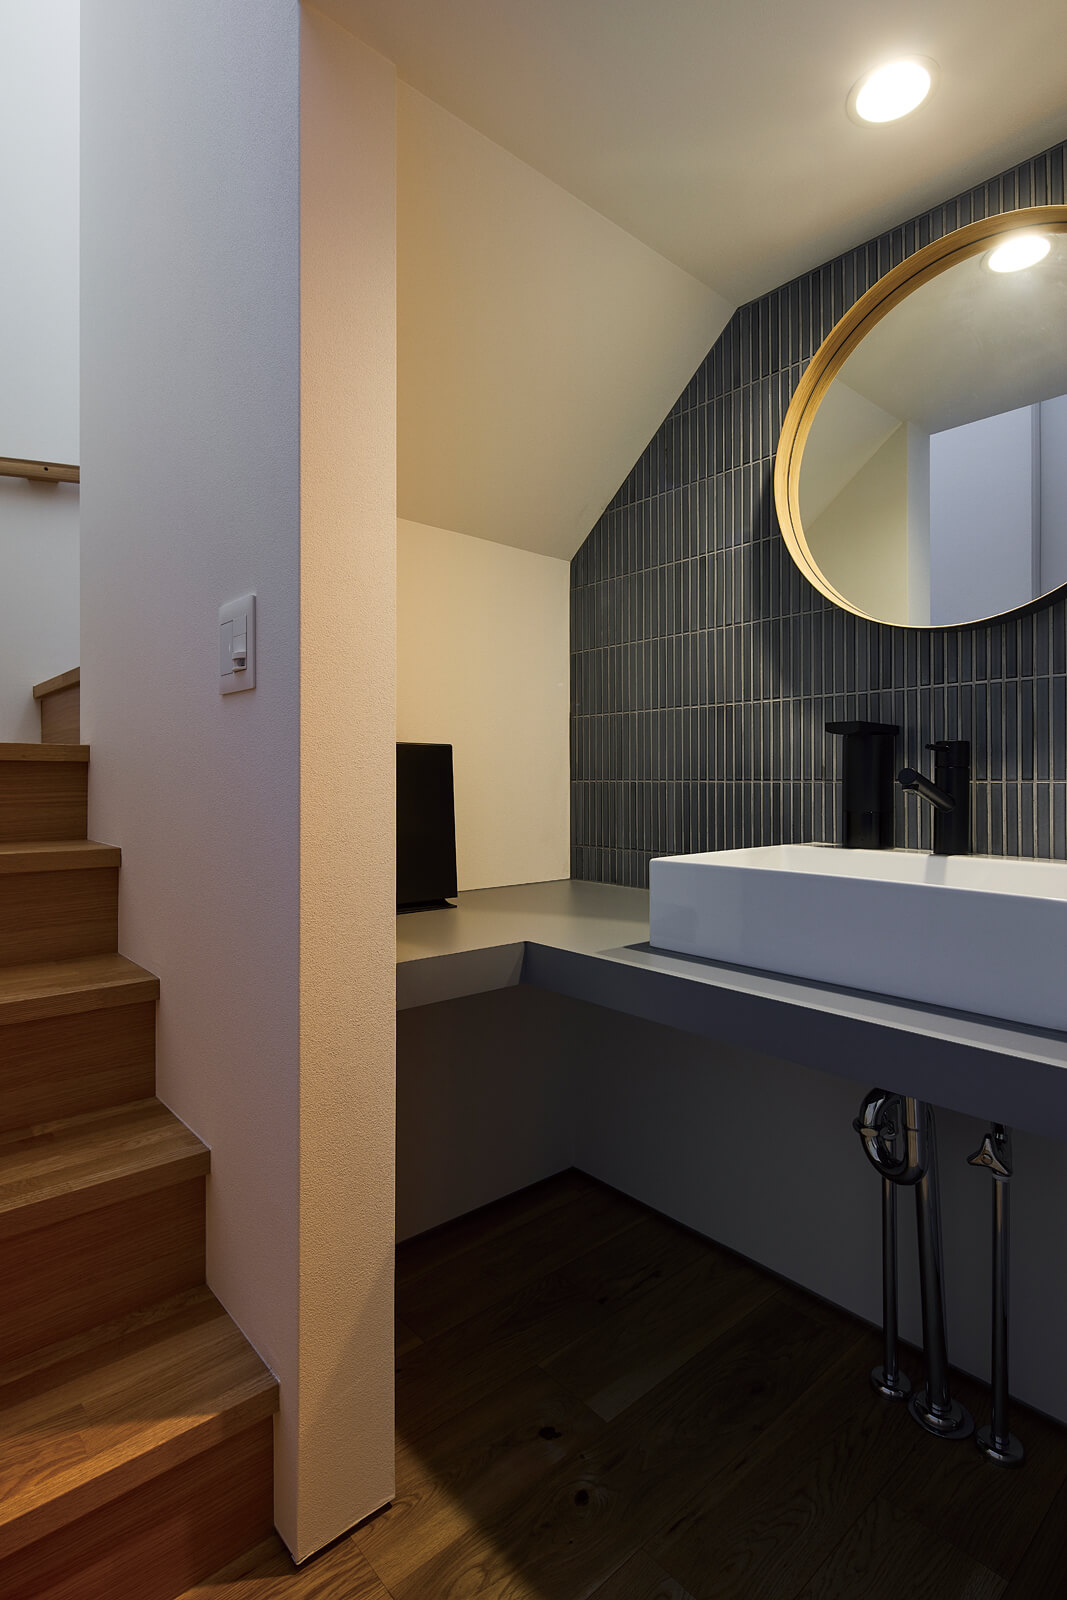 階段下のデッドスペースを利用した手洗いコーナー。黒のタイルと丸鏡がホテルのようなラグジュアリー感を演出